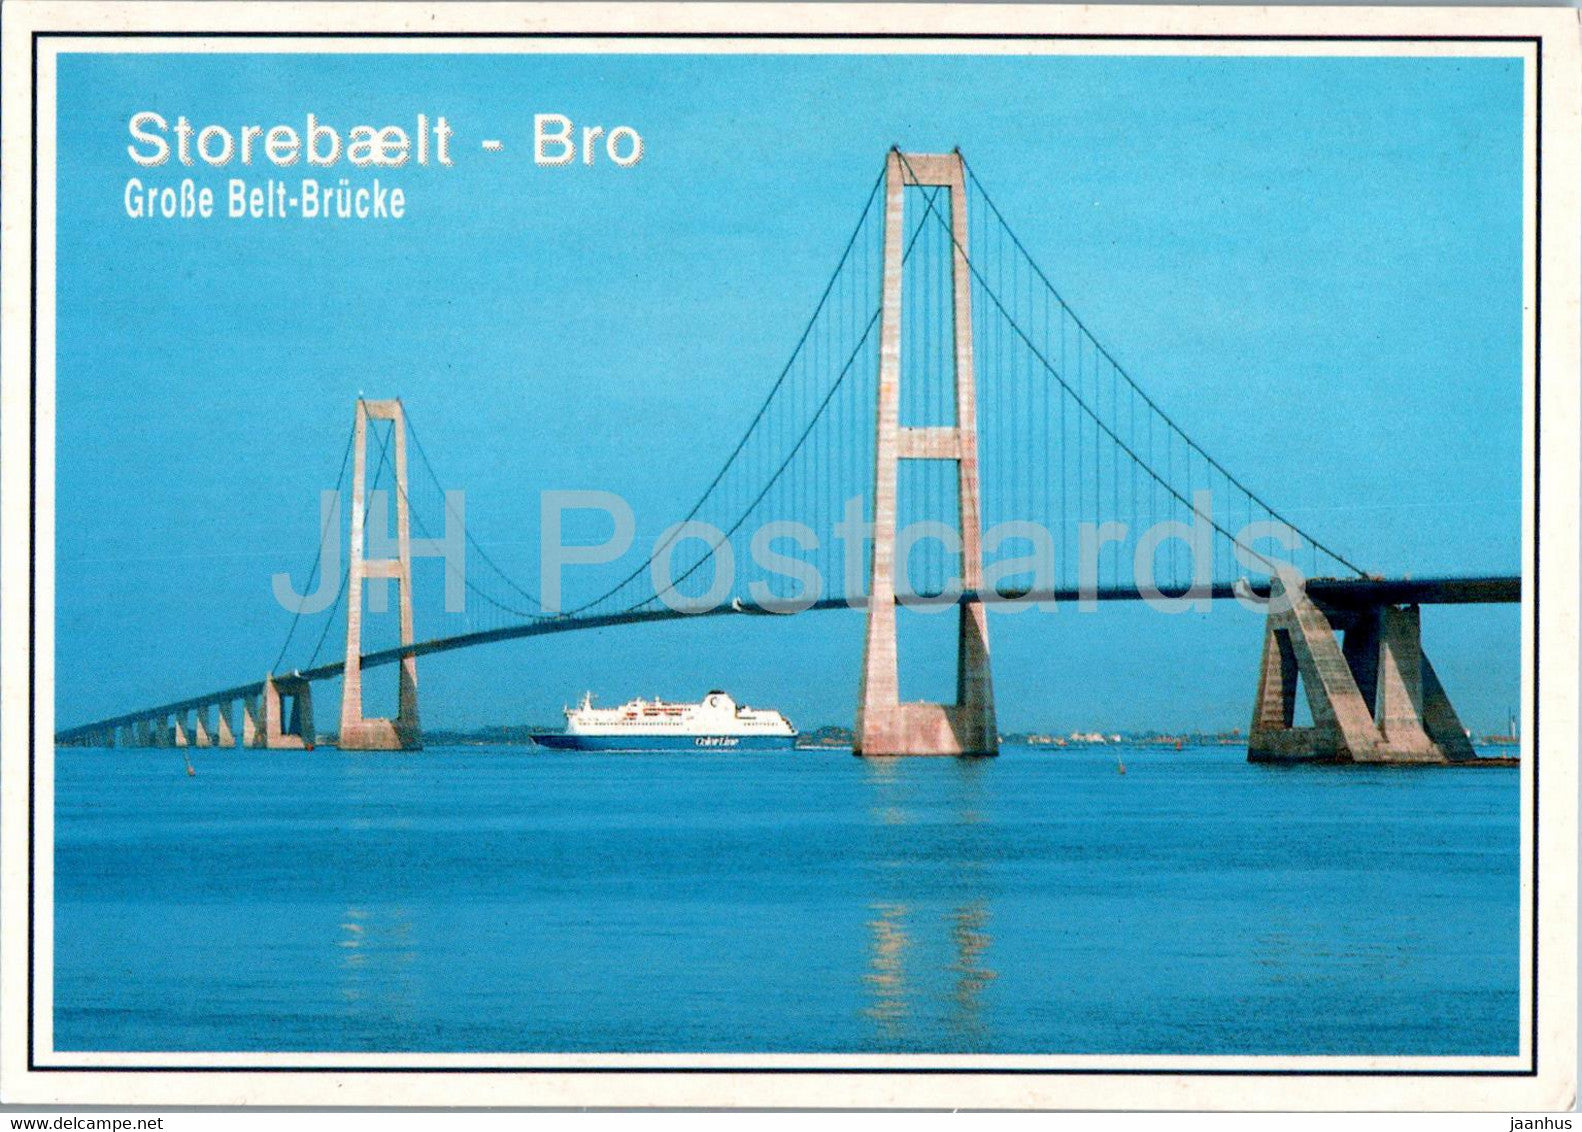 Storebaelt Bro - bridge - Denmark - unused - JH Postcards